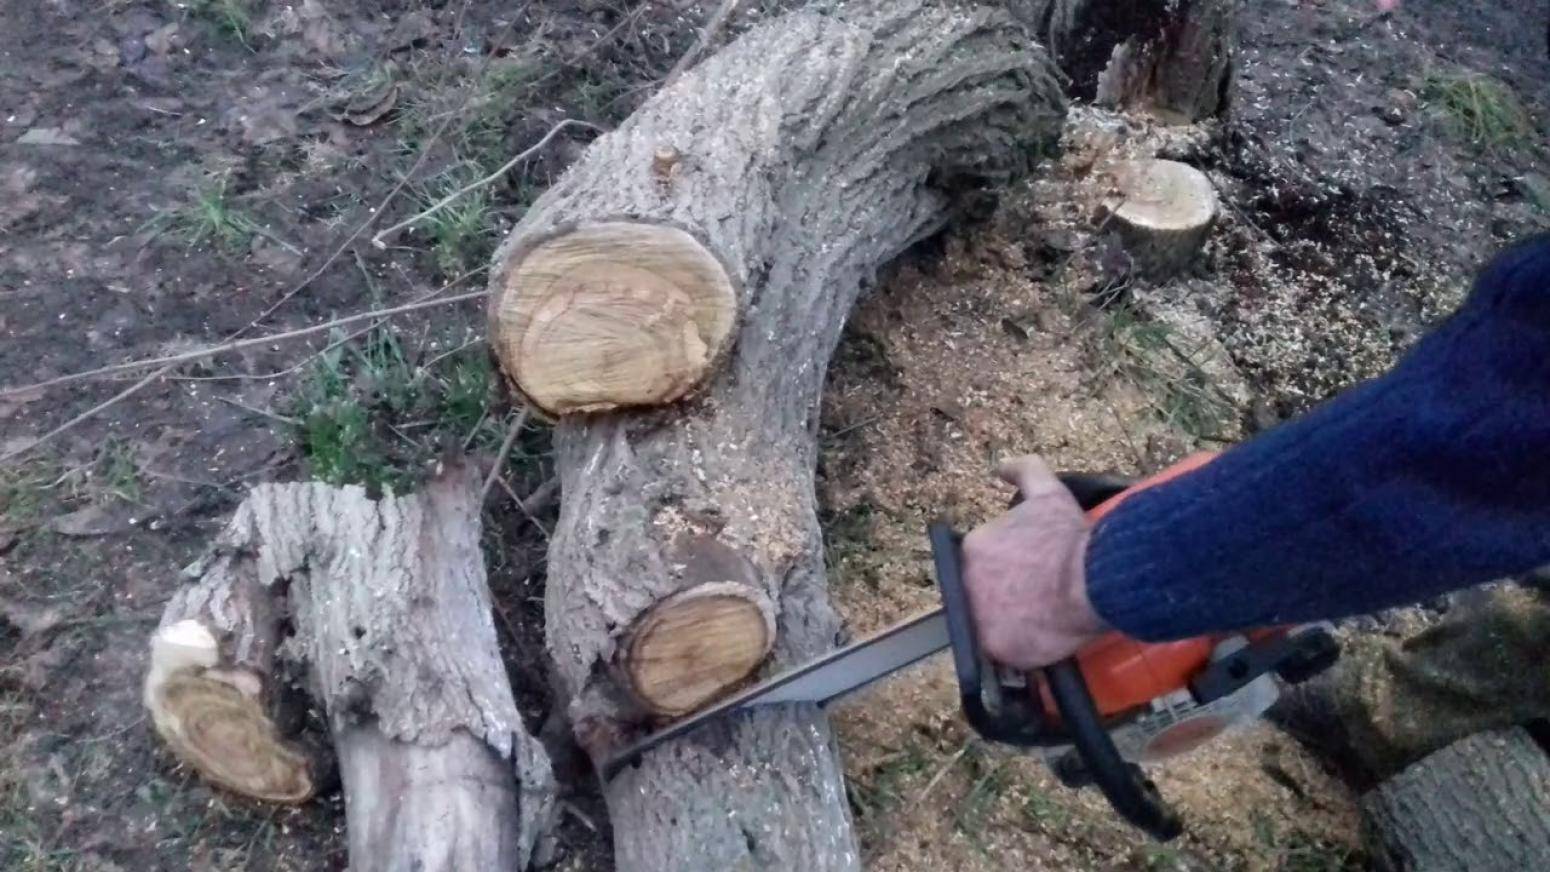 Незаконная вырубка деревьев в городе, штраф за спиленное дерево и вырубку дерева в лесу | cl-forest.ru